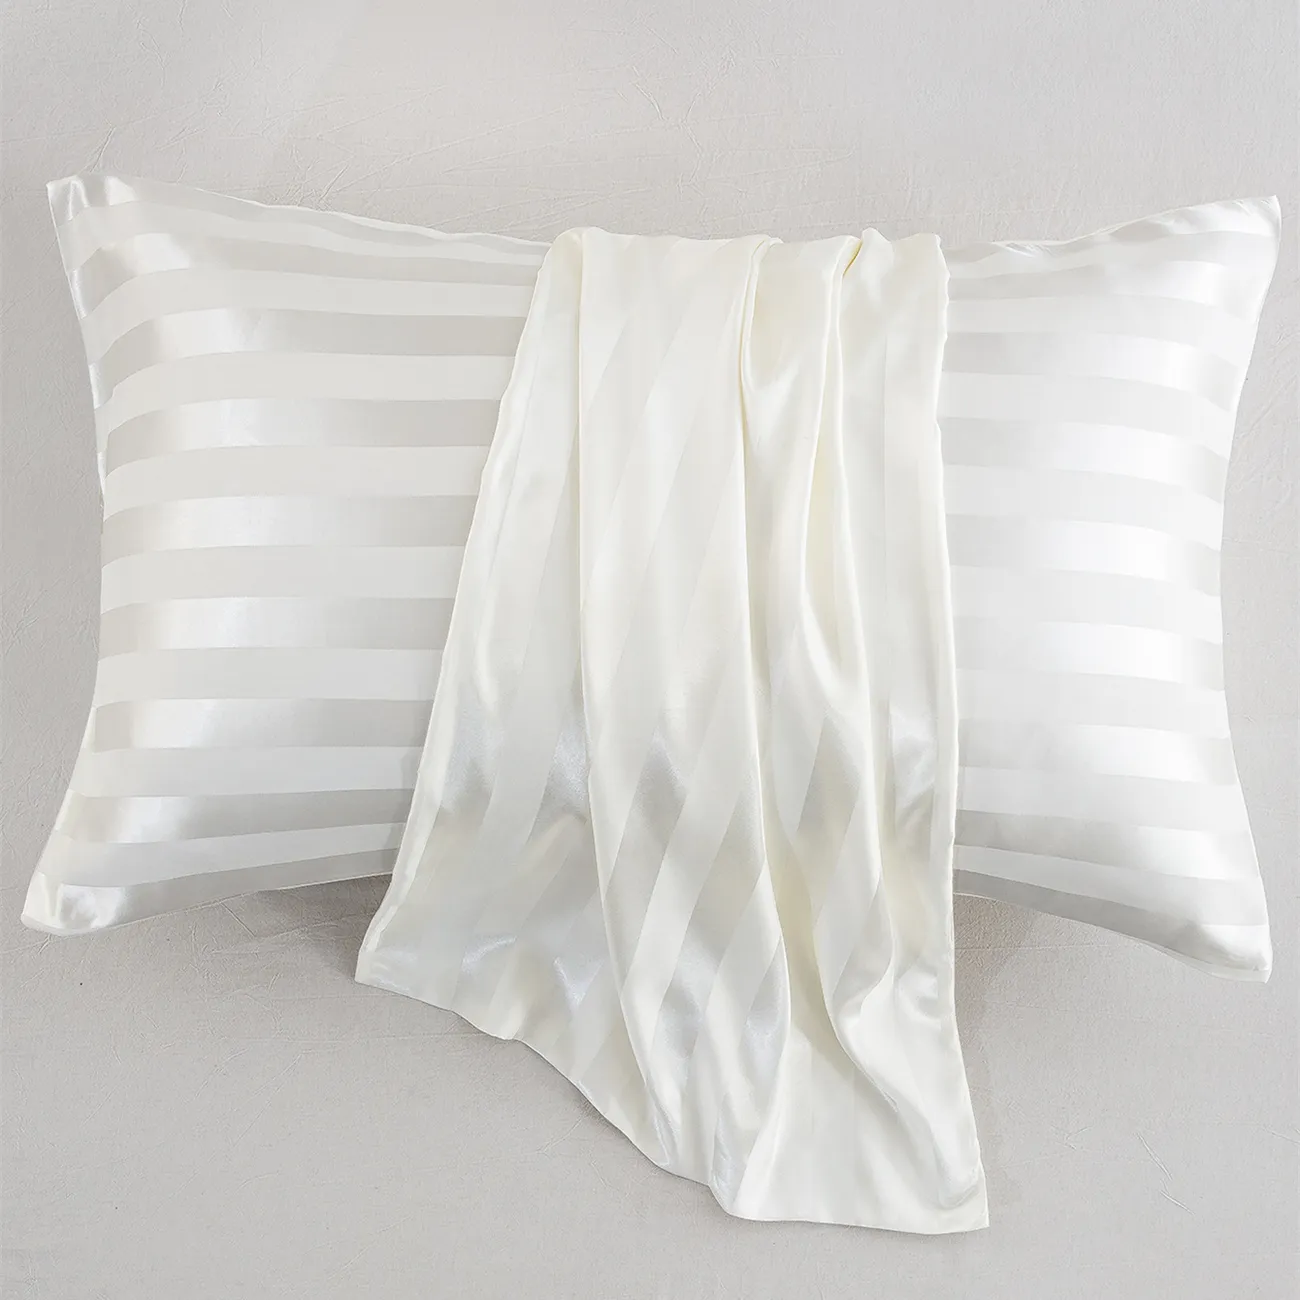 2 Stück zurückhaltende Luxus-Kissenbezüge aus festem Satin in 4 Größen für Bettwäsche weiß big image 1